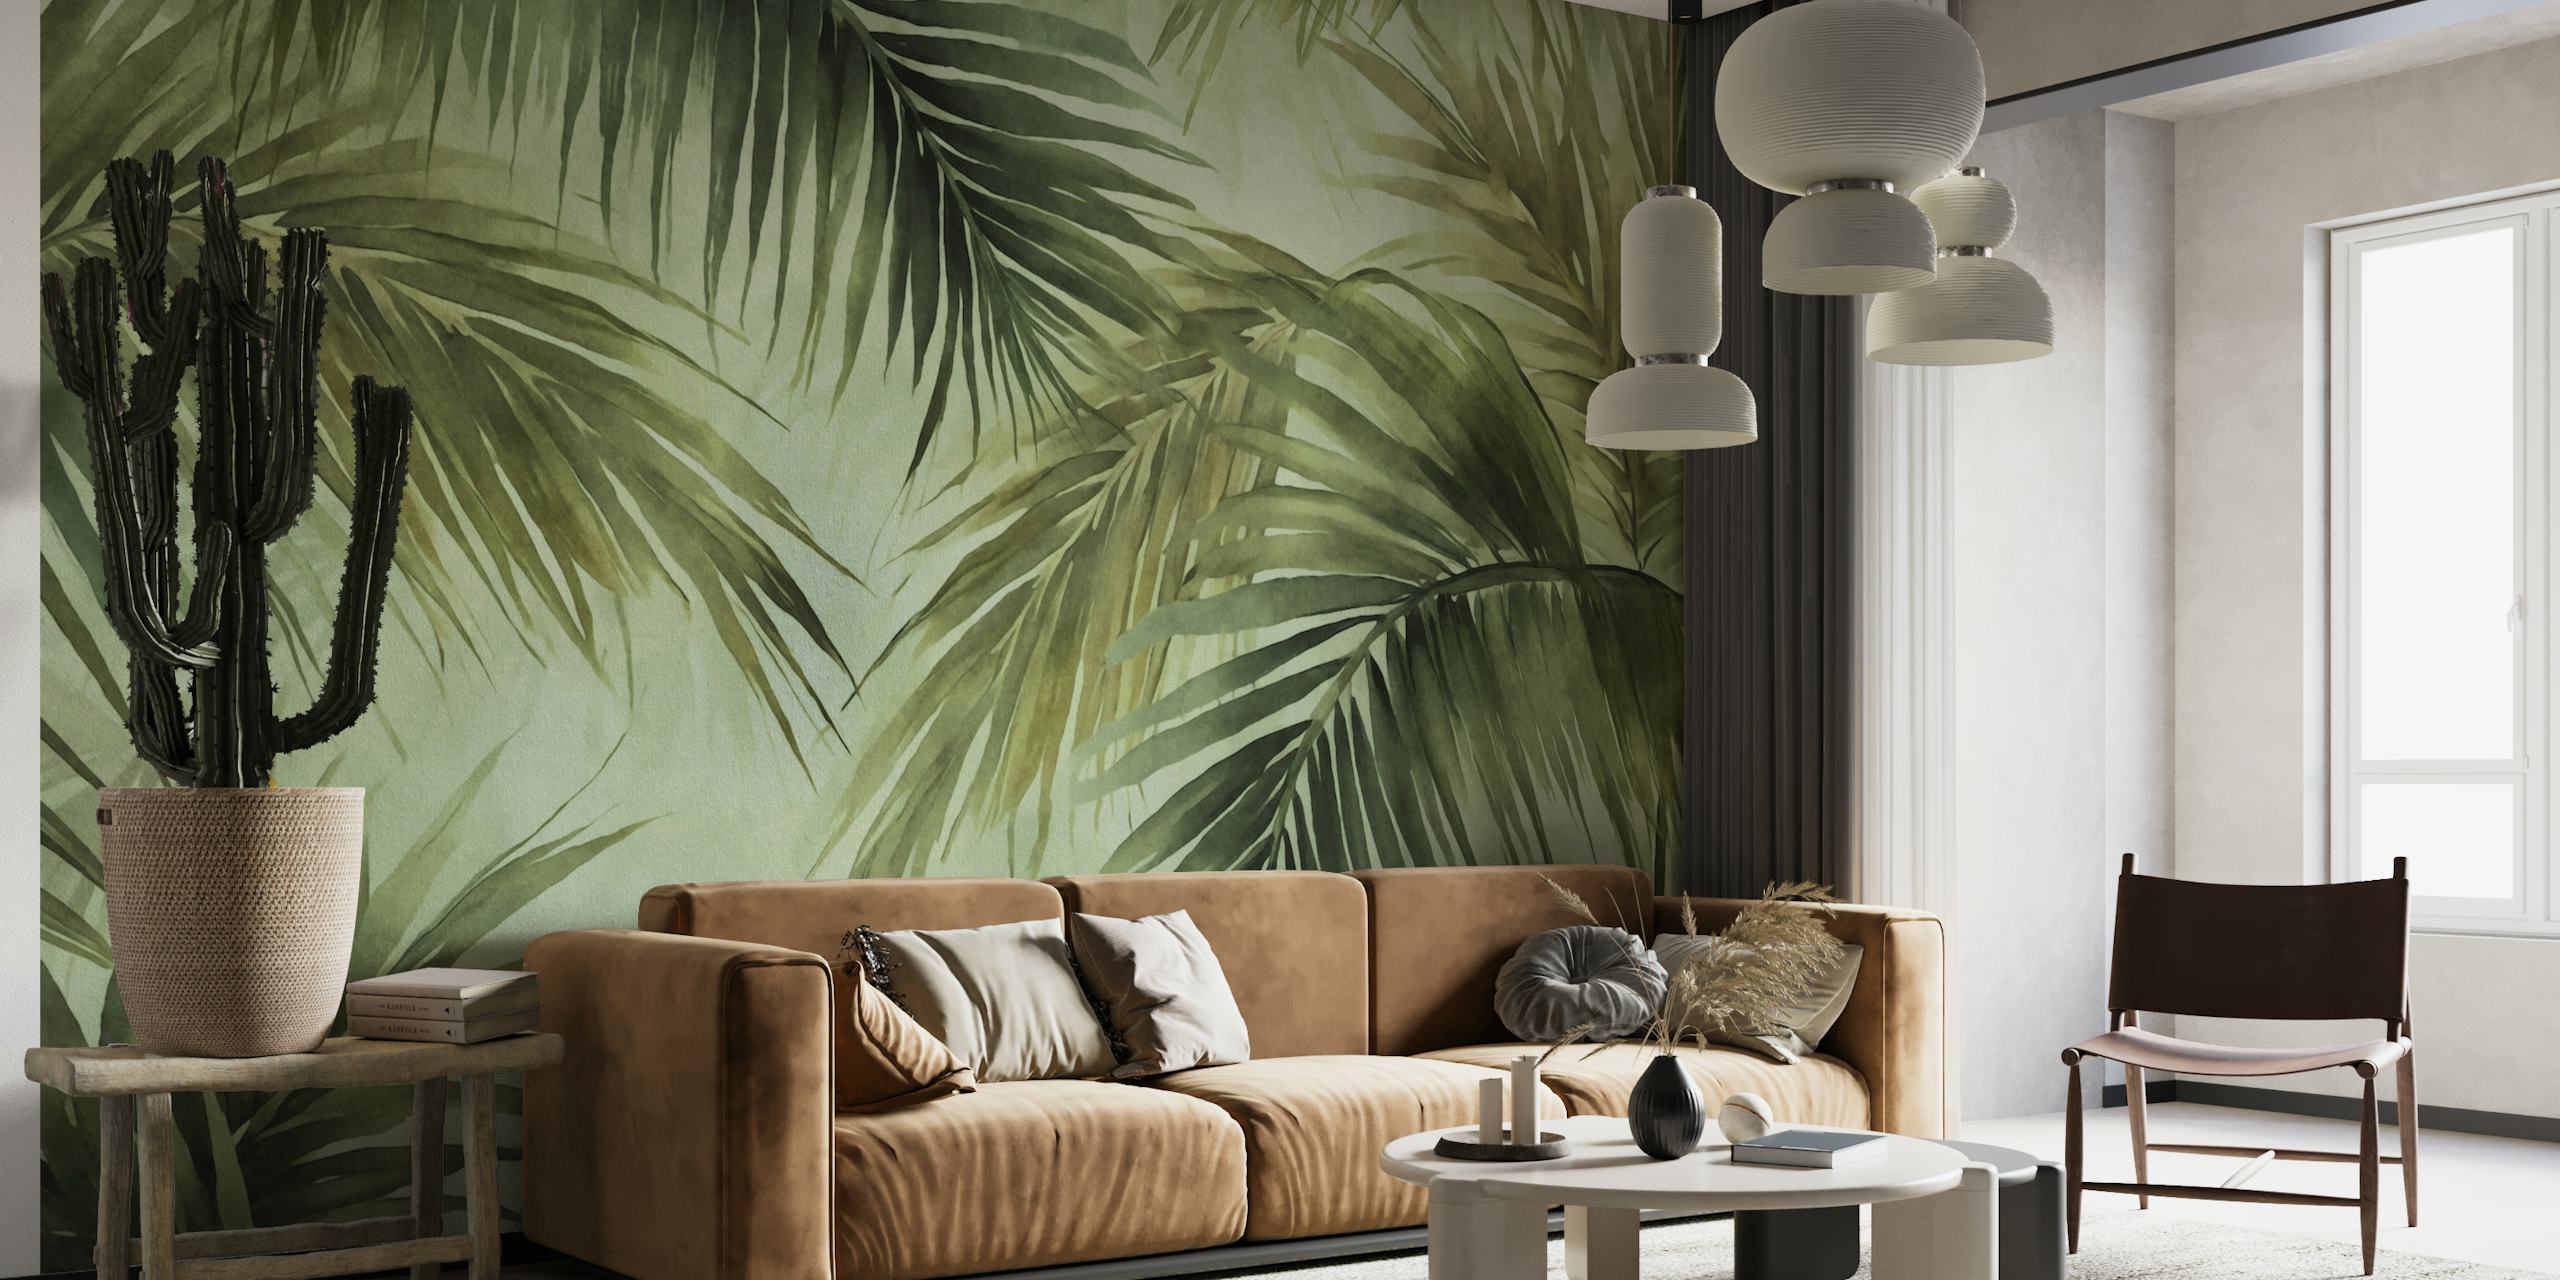 Murale ad acquerello con foglie di palma in tonalità lunatiche, perfetto per creare un'atmosfera da isola tropicale.